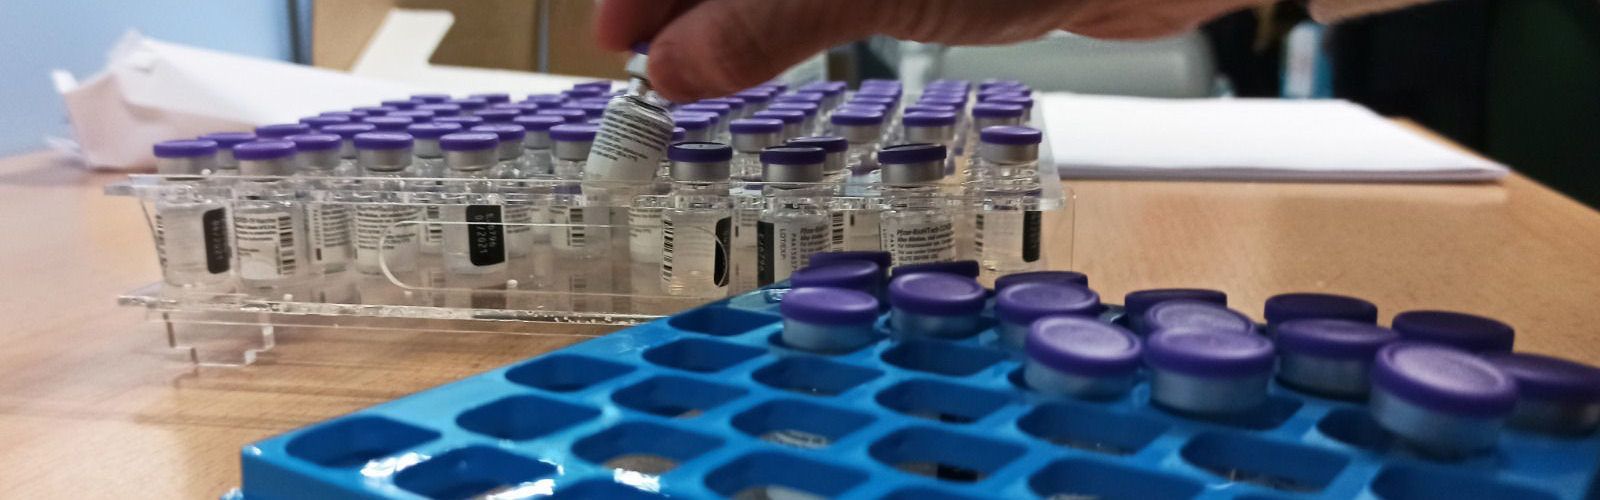 Solo el 1,8% de personas rechaza vacunarse contra la COVID-19 en la Comunitat Valenciana